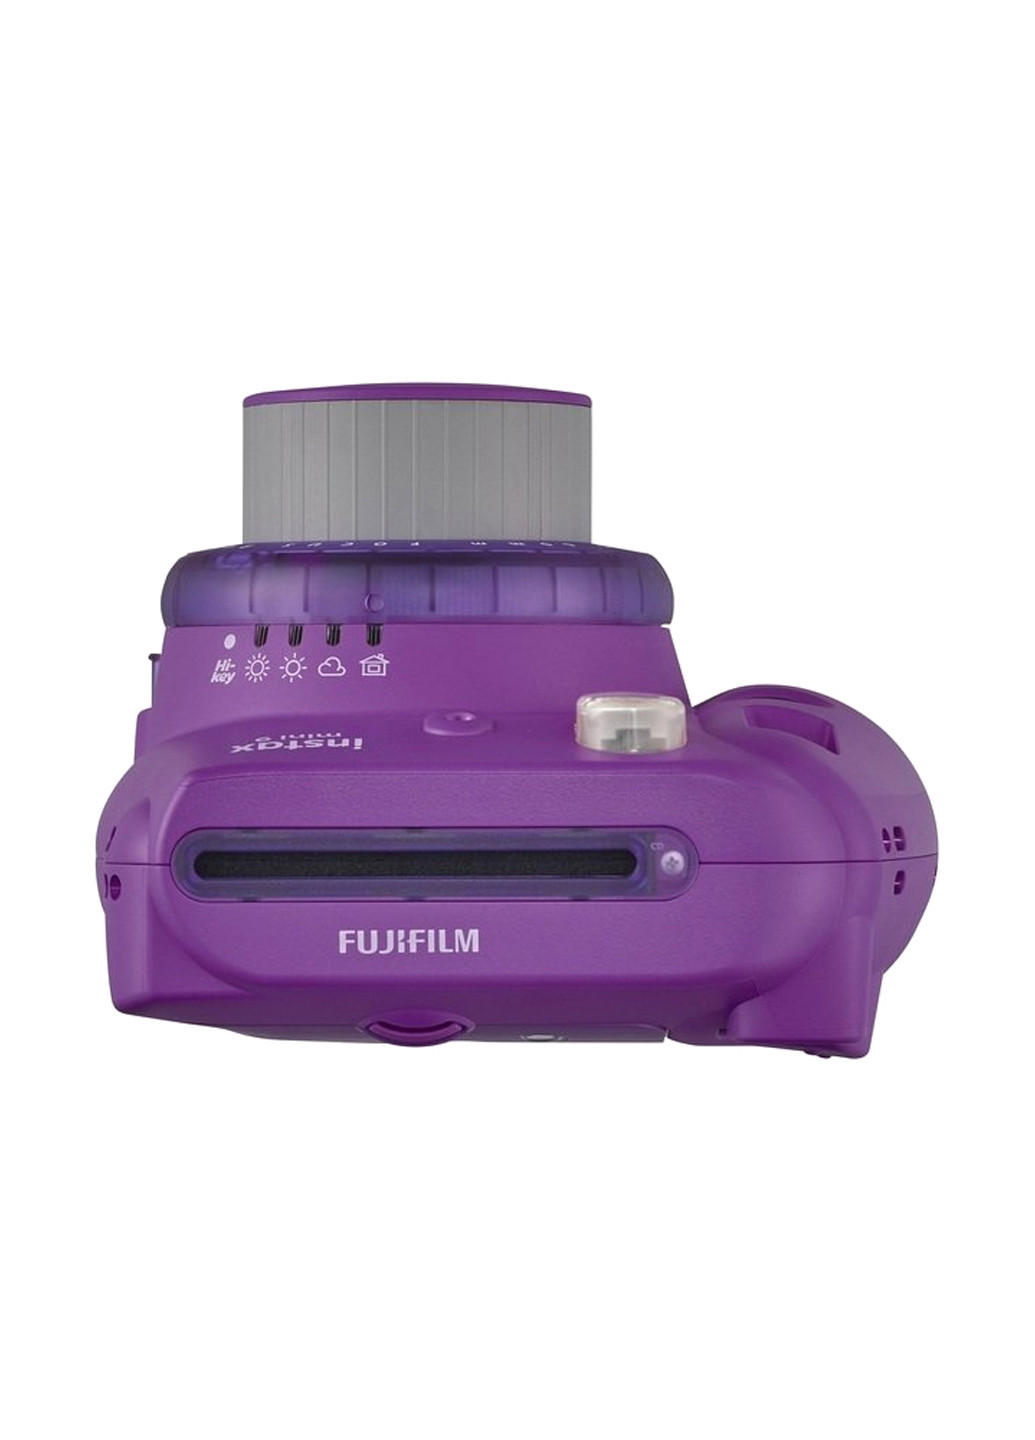 Фотокамера миттєвого друку INSTAX Mini 9 Purple Fujifilm моментальной печати INSTAX Mini 9 Purple фіолетовий